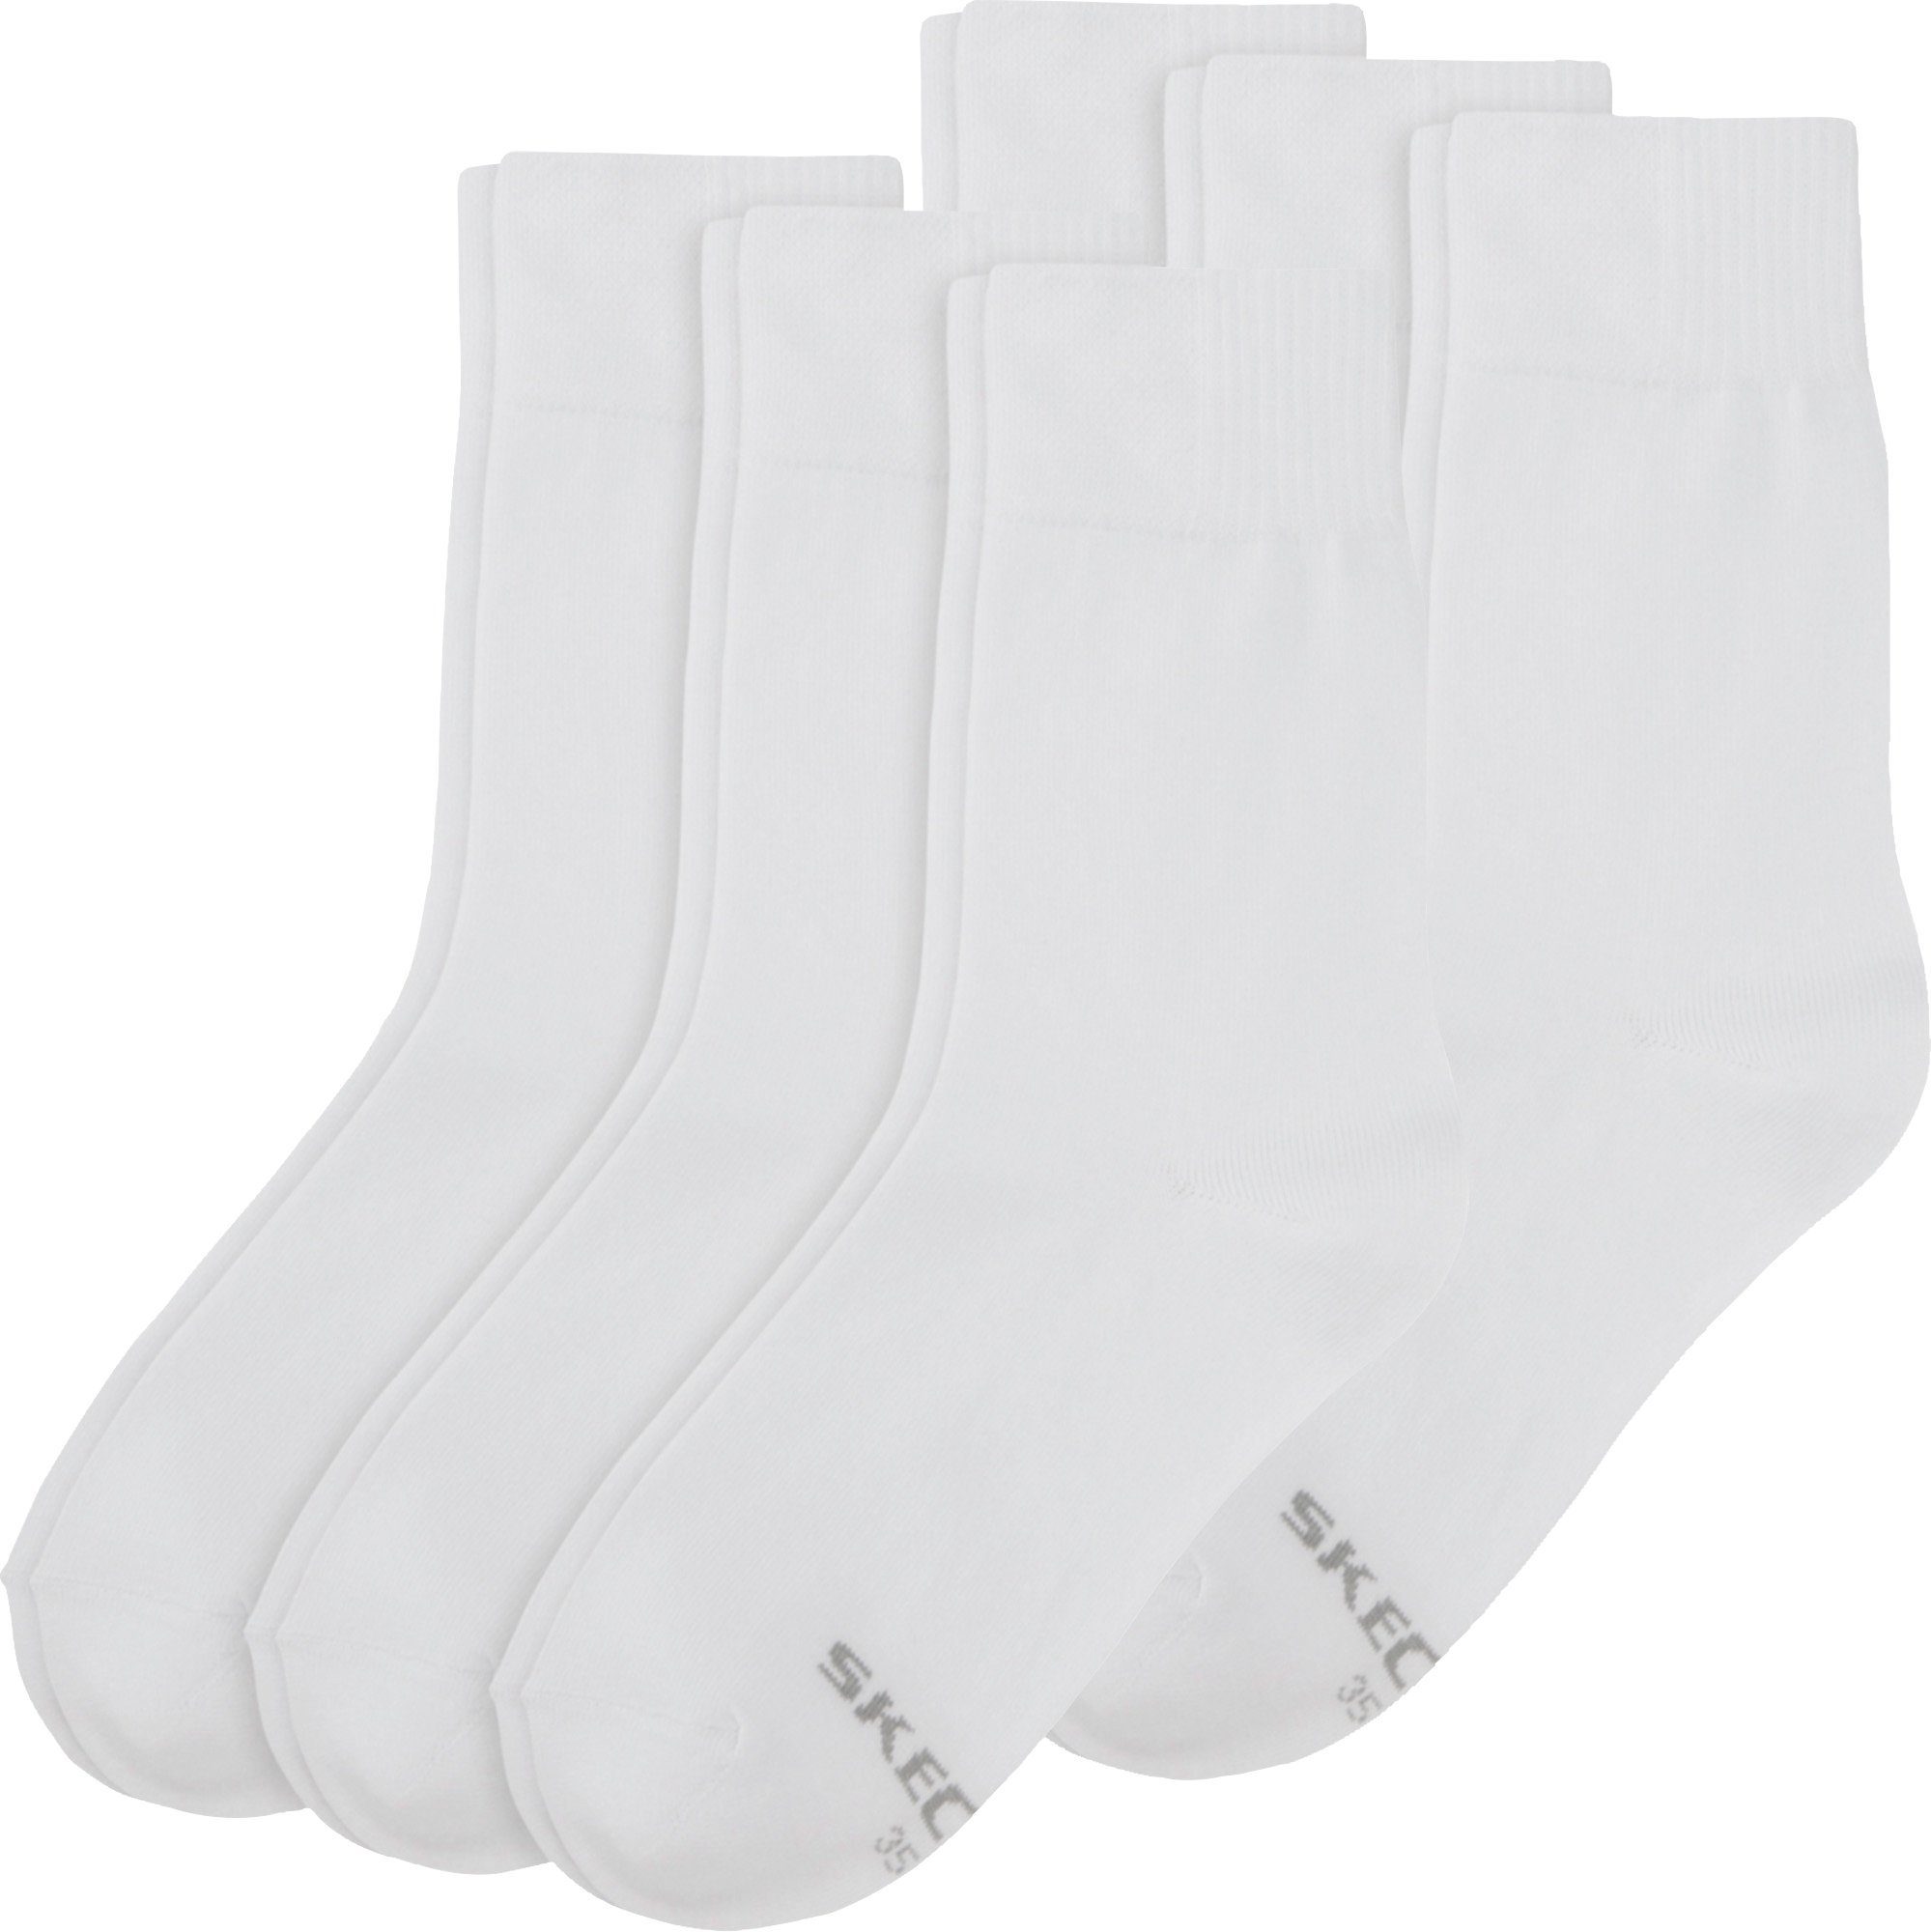 Damen-Socken Skechers 6 Socken Uni weiß Paar